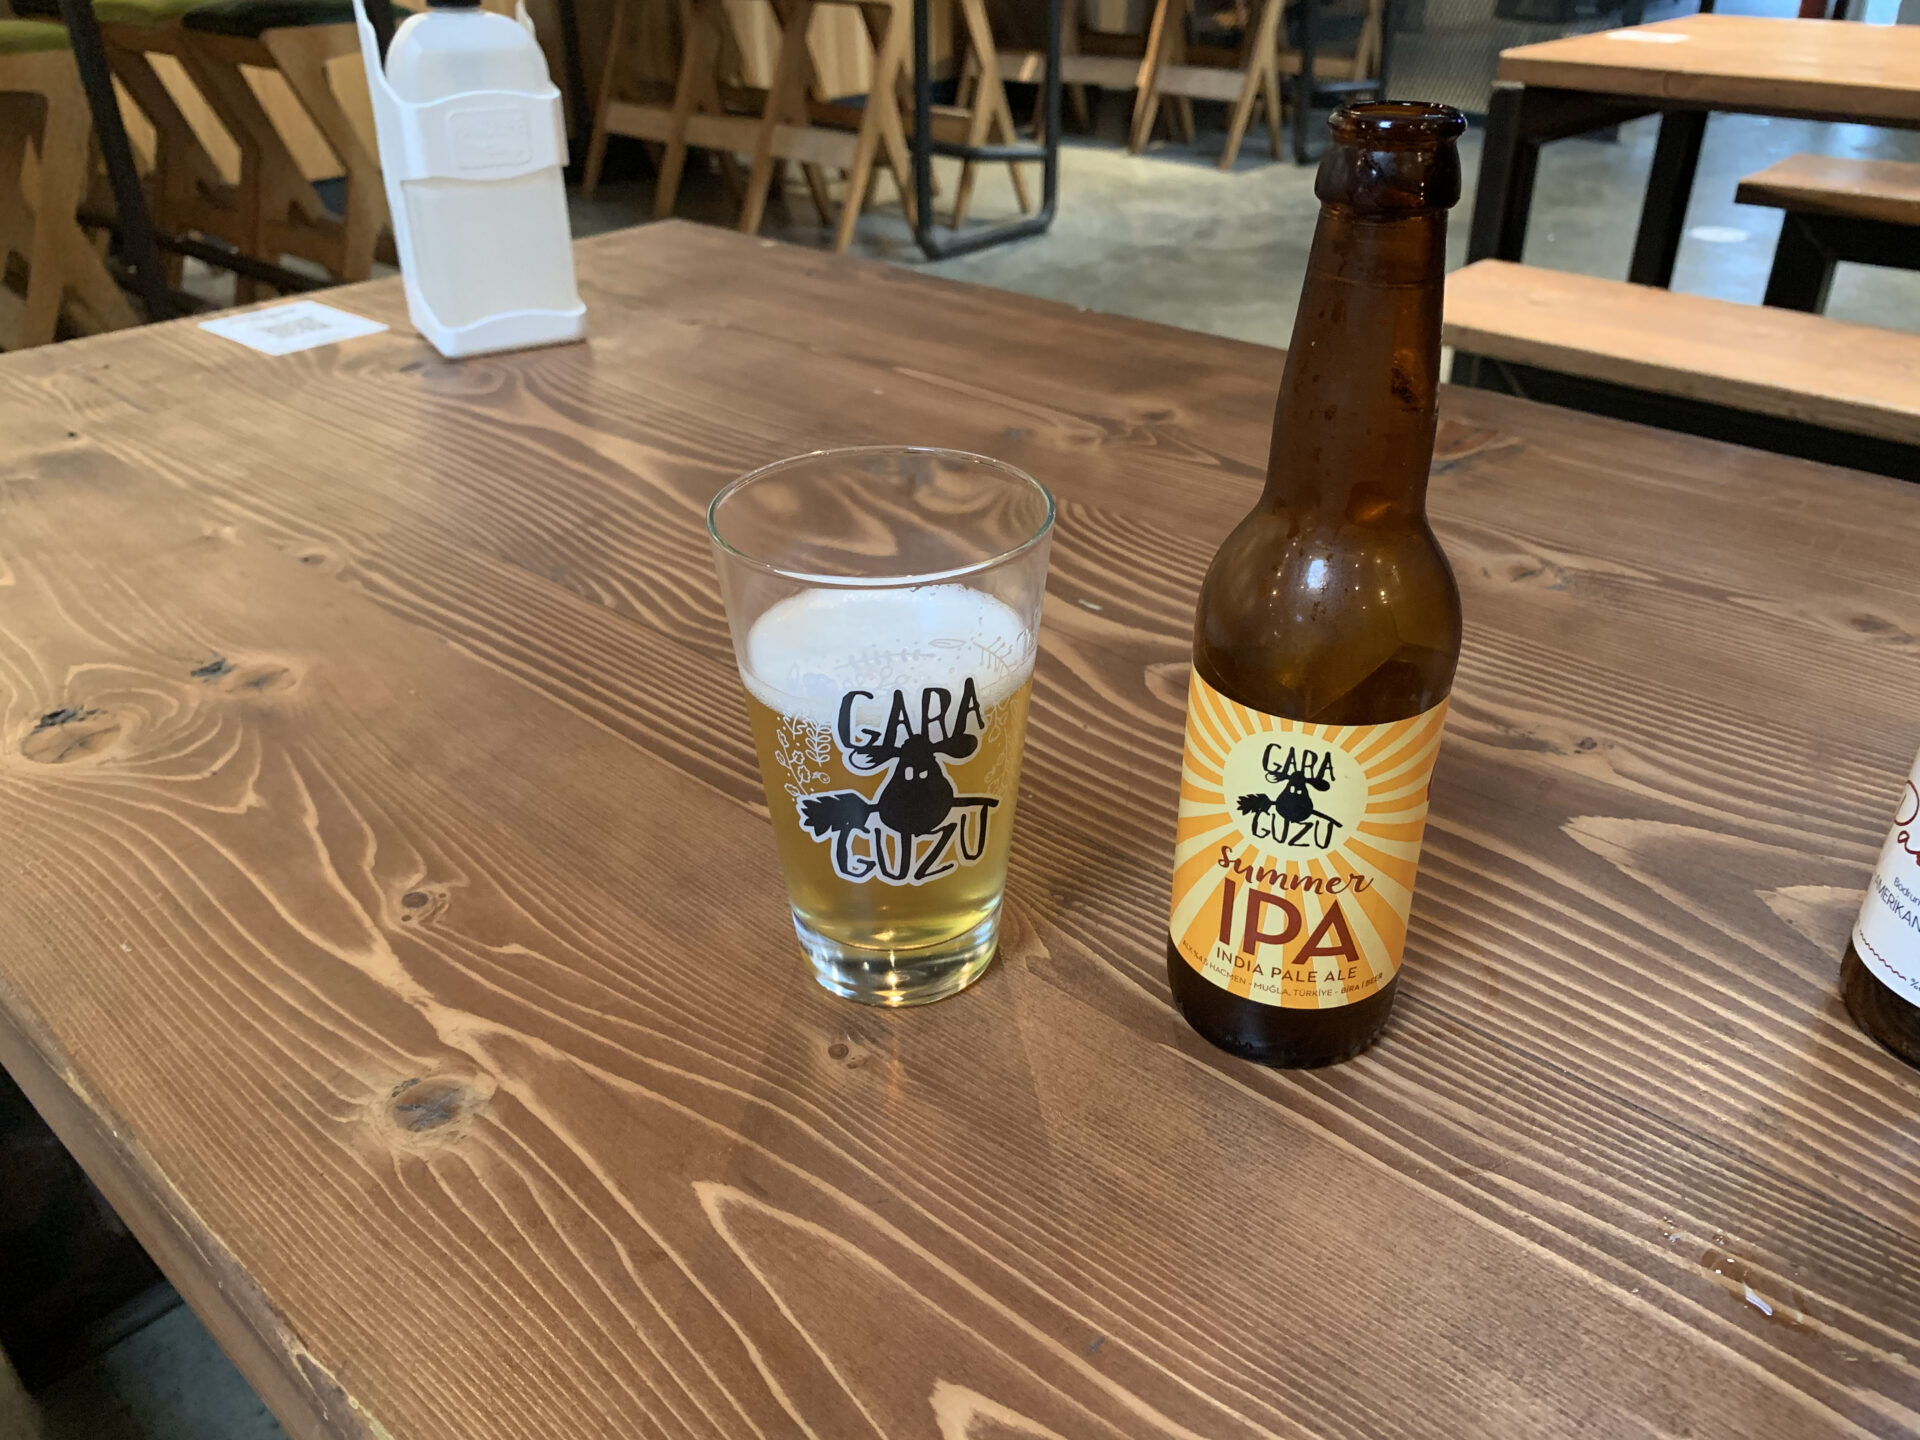 A beer glass with the inscription Gara Guzu next to a bottle of Gara Guzu IPA beer